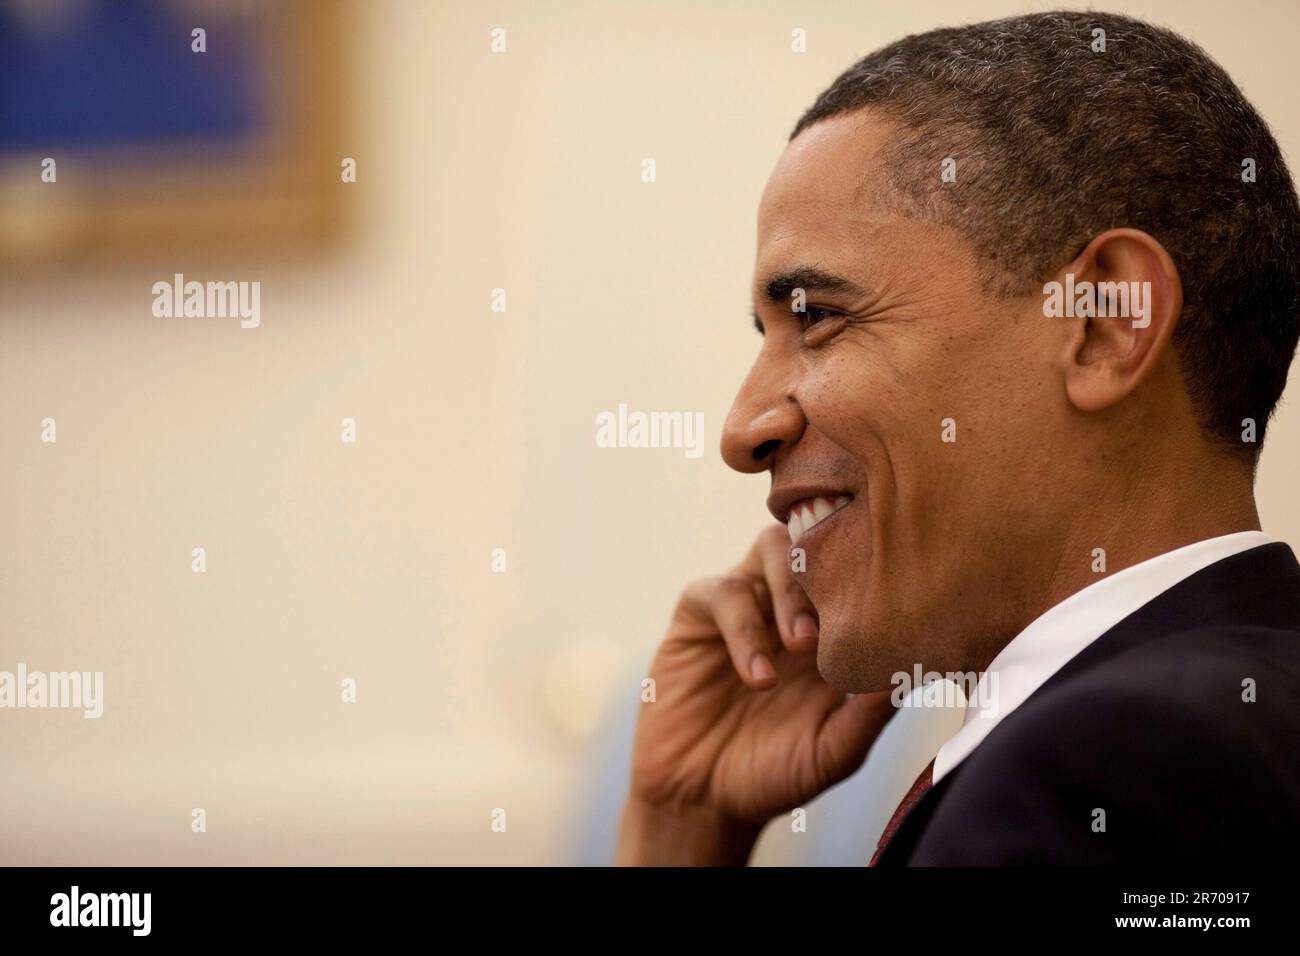 Washington, DC - 15. Juni 2009 -- US-Präsident Barack Obama lächelt während eines Treffens mit dem italienischen Premierminister Silvio Berlusconi im Oval Office des Weißen Hauses am 15. Juni 2009. Erforderliches Guthaben: Pete Souza - Weißes Haus über CNP Stockfoto